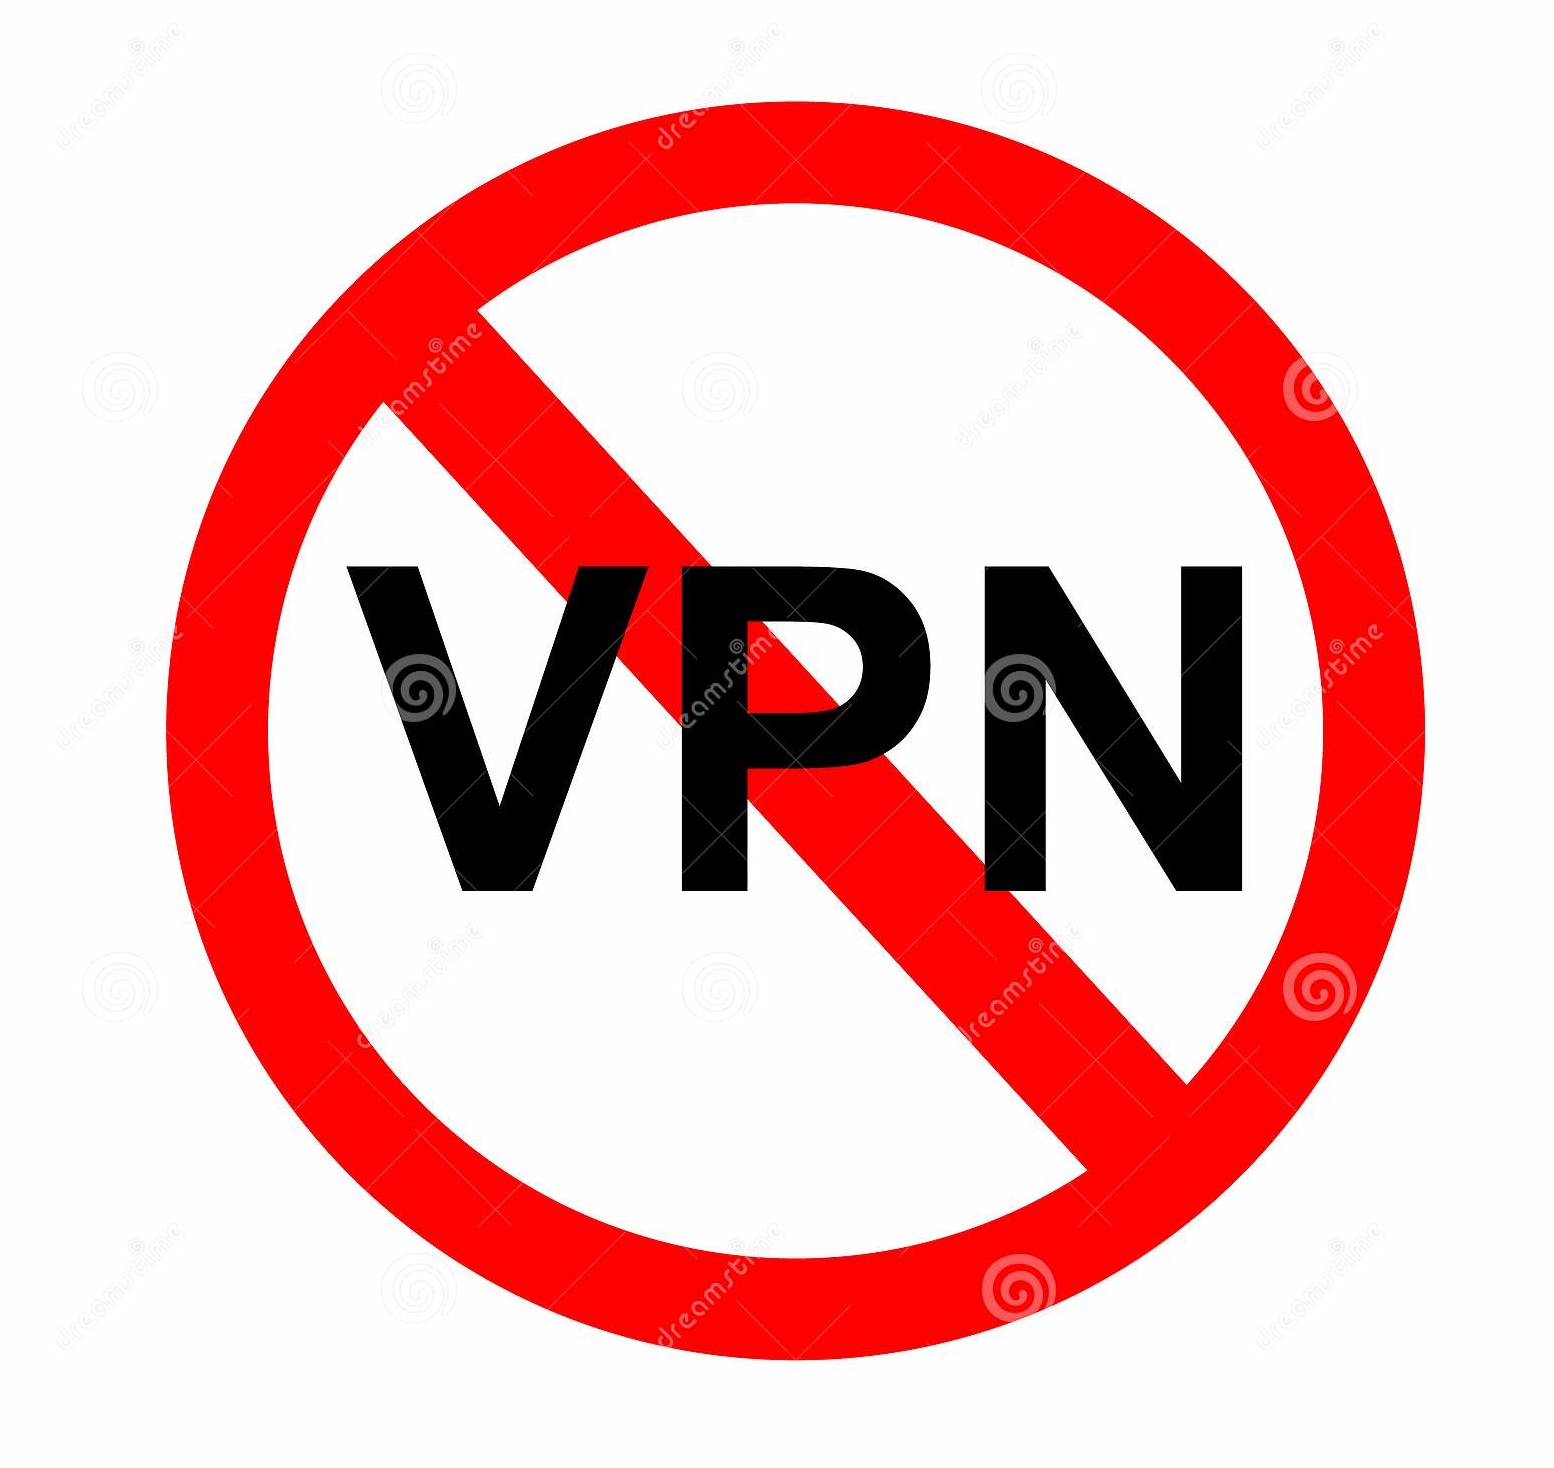 VPN Service Provider Ensures Secure VPN For Your Data